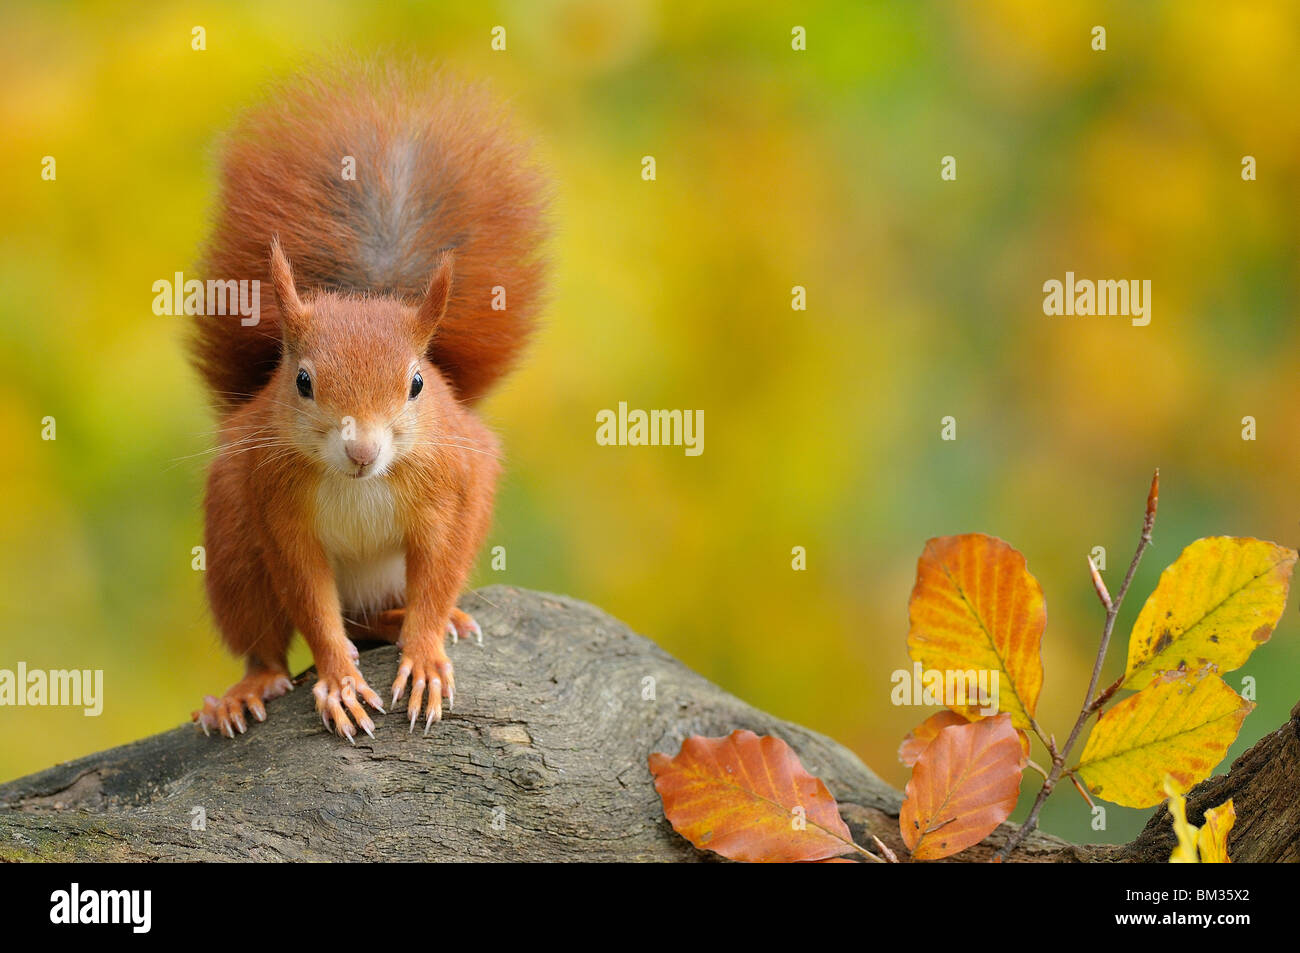 Red scoiattolo (Sciurus vulgaris) guardando mentre in piedi su un ceppo di albero, Paesi Bassi. Foto Stock